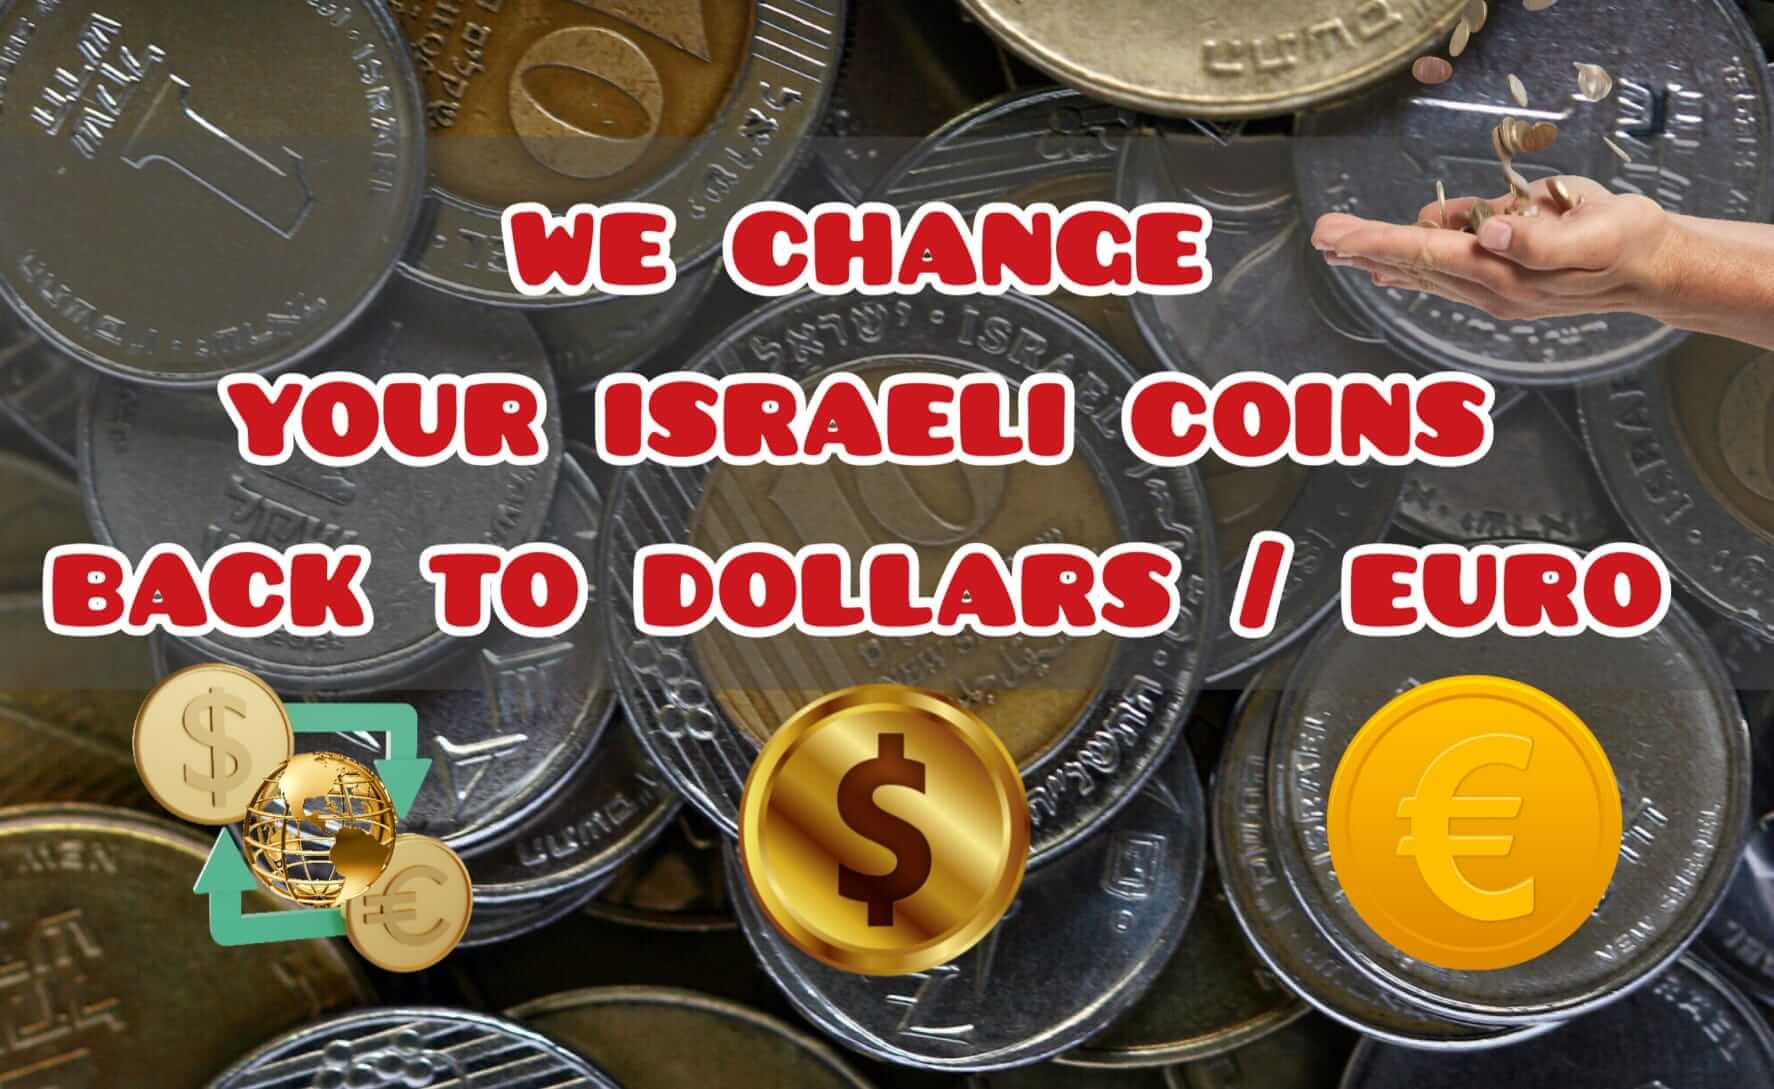 Exchange Israeli coins